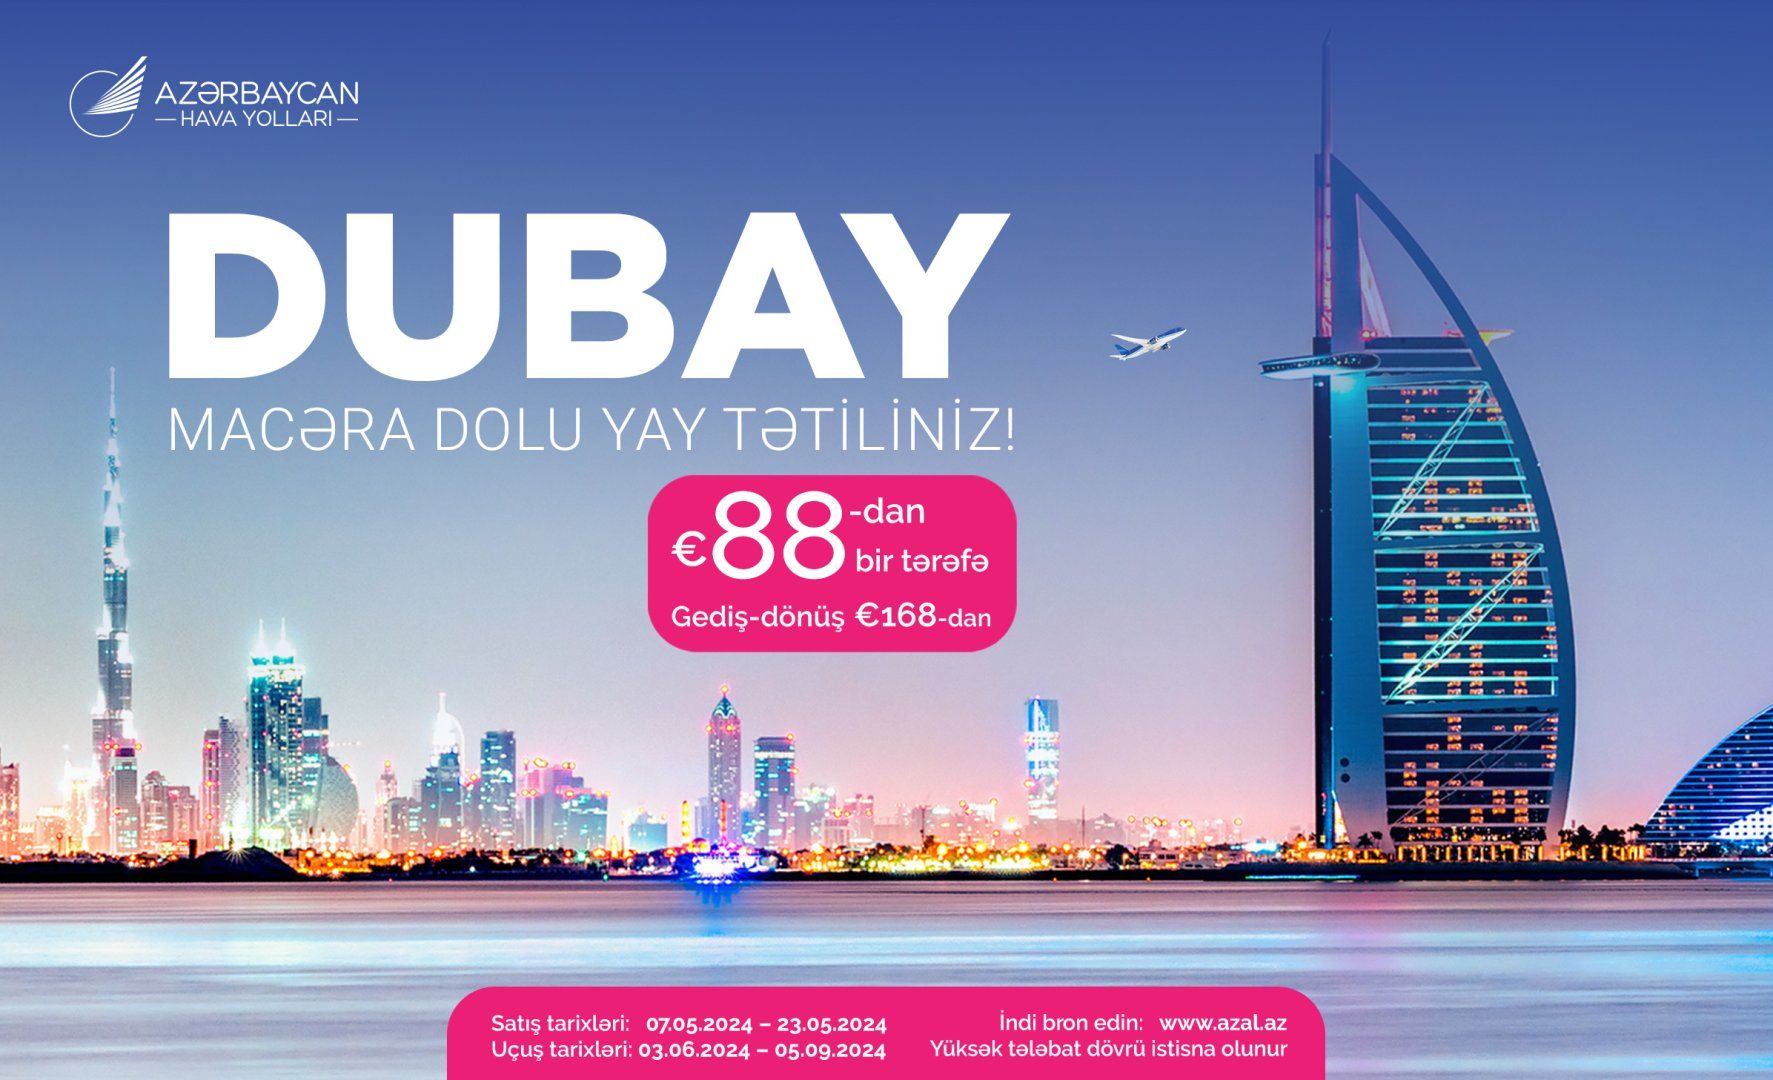 AZAL offers special offers for flights between Baku, Dubai